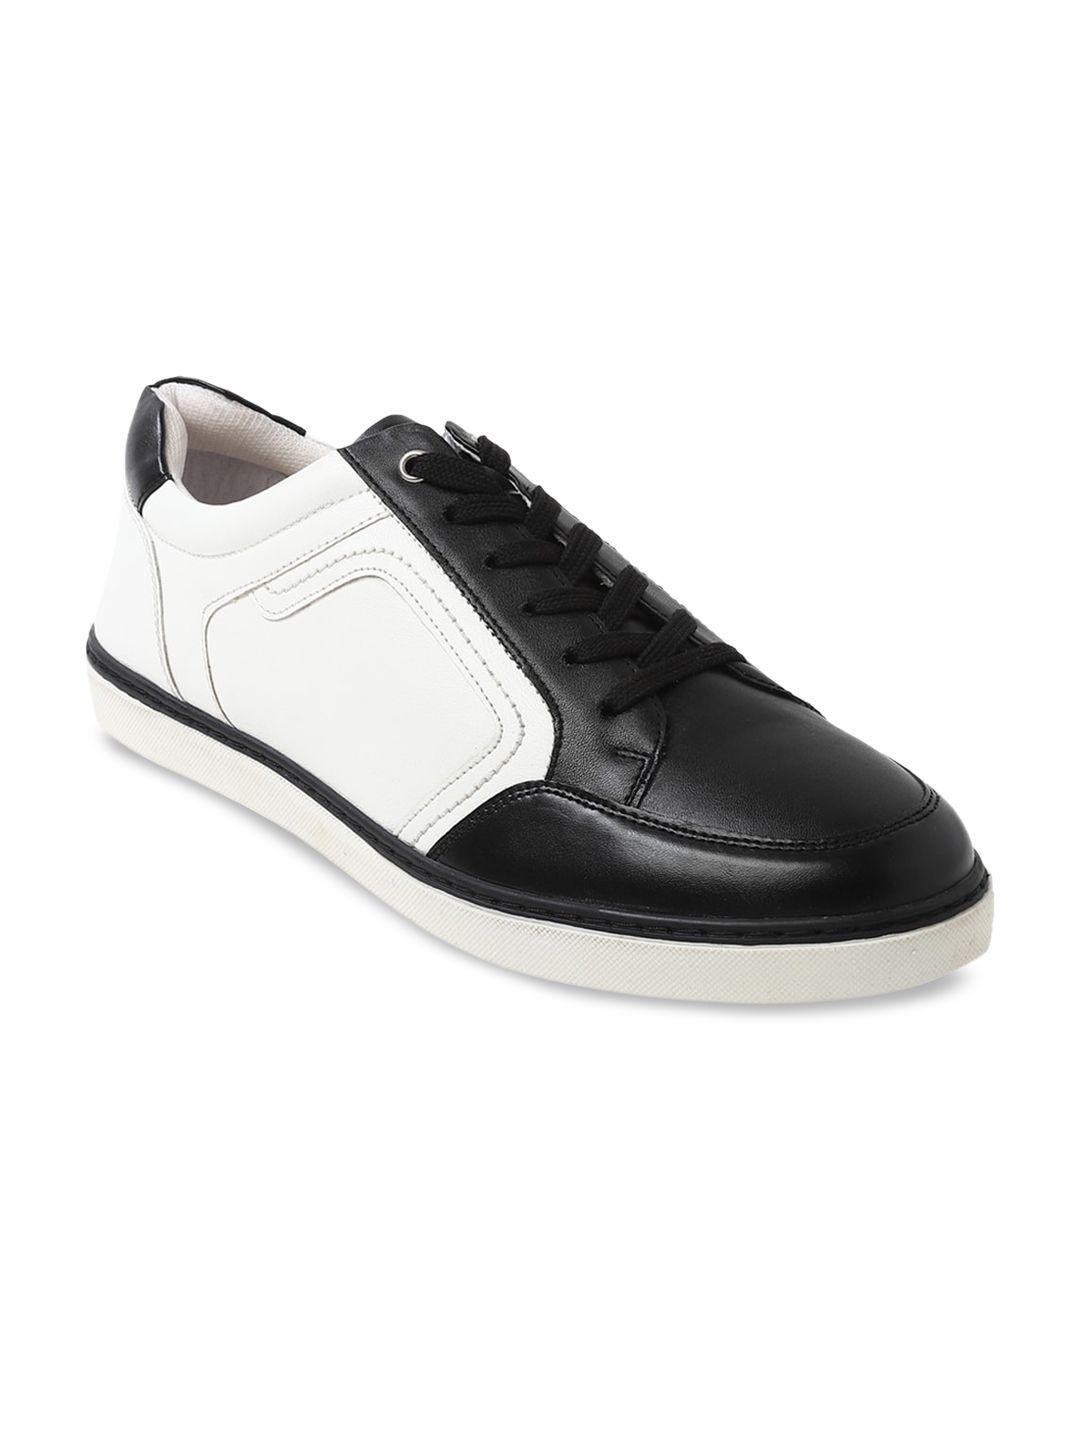 forever-21-men-black-&-white-colourblocked-sneakers